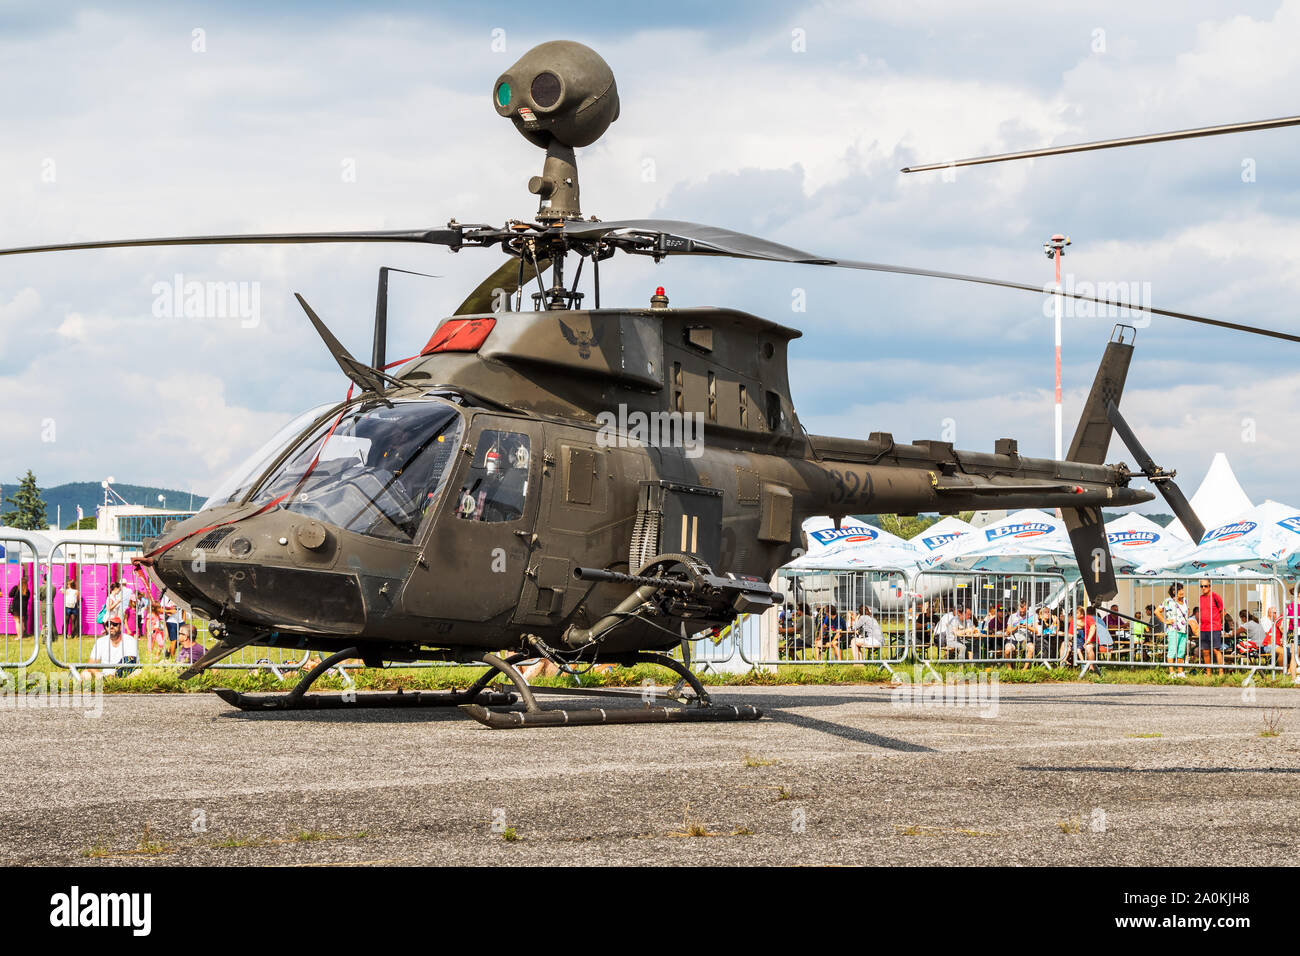 Sliac / Slovaquie - Août 3, 2019 : La Force aérienne croate Bell OH-58D Kiowa Warrior 324 hélicoptères d'attaque à l'affichage statique de l'Air International slovaque SIAF Banque D'Images